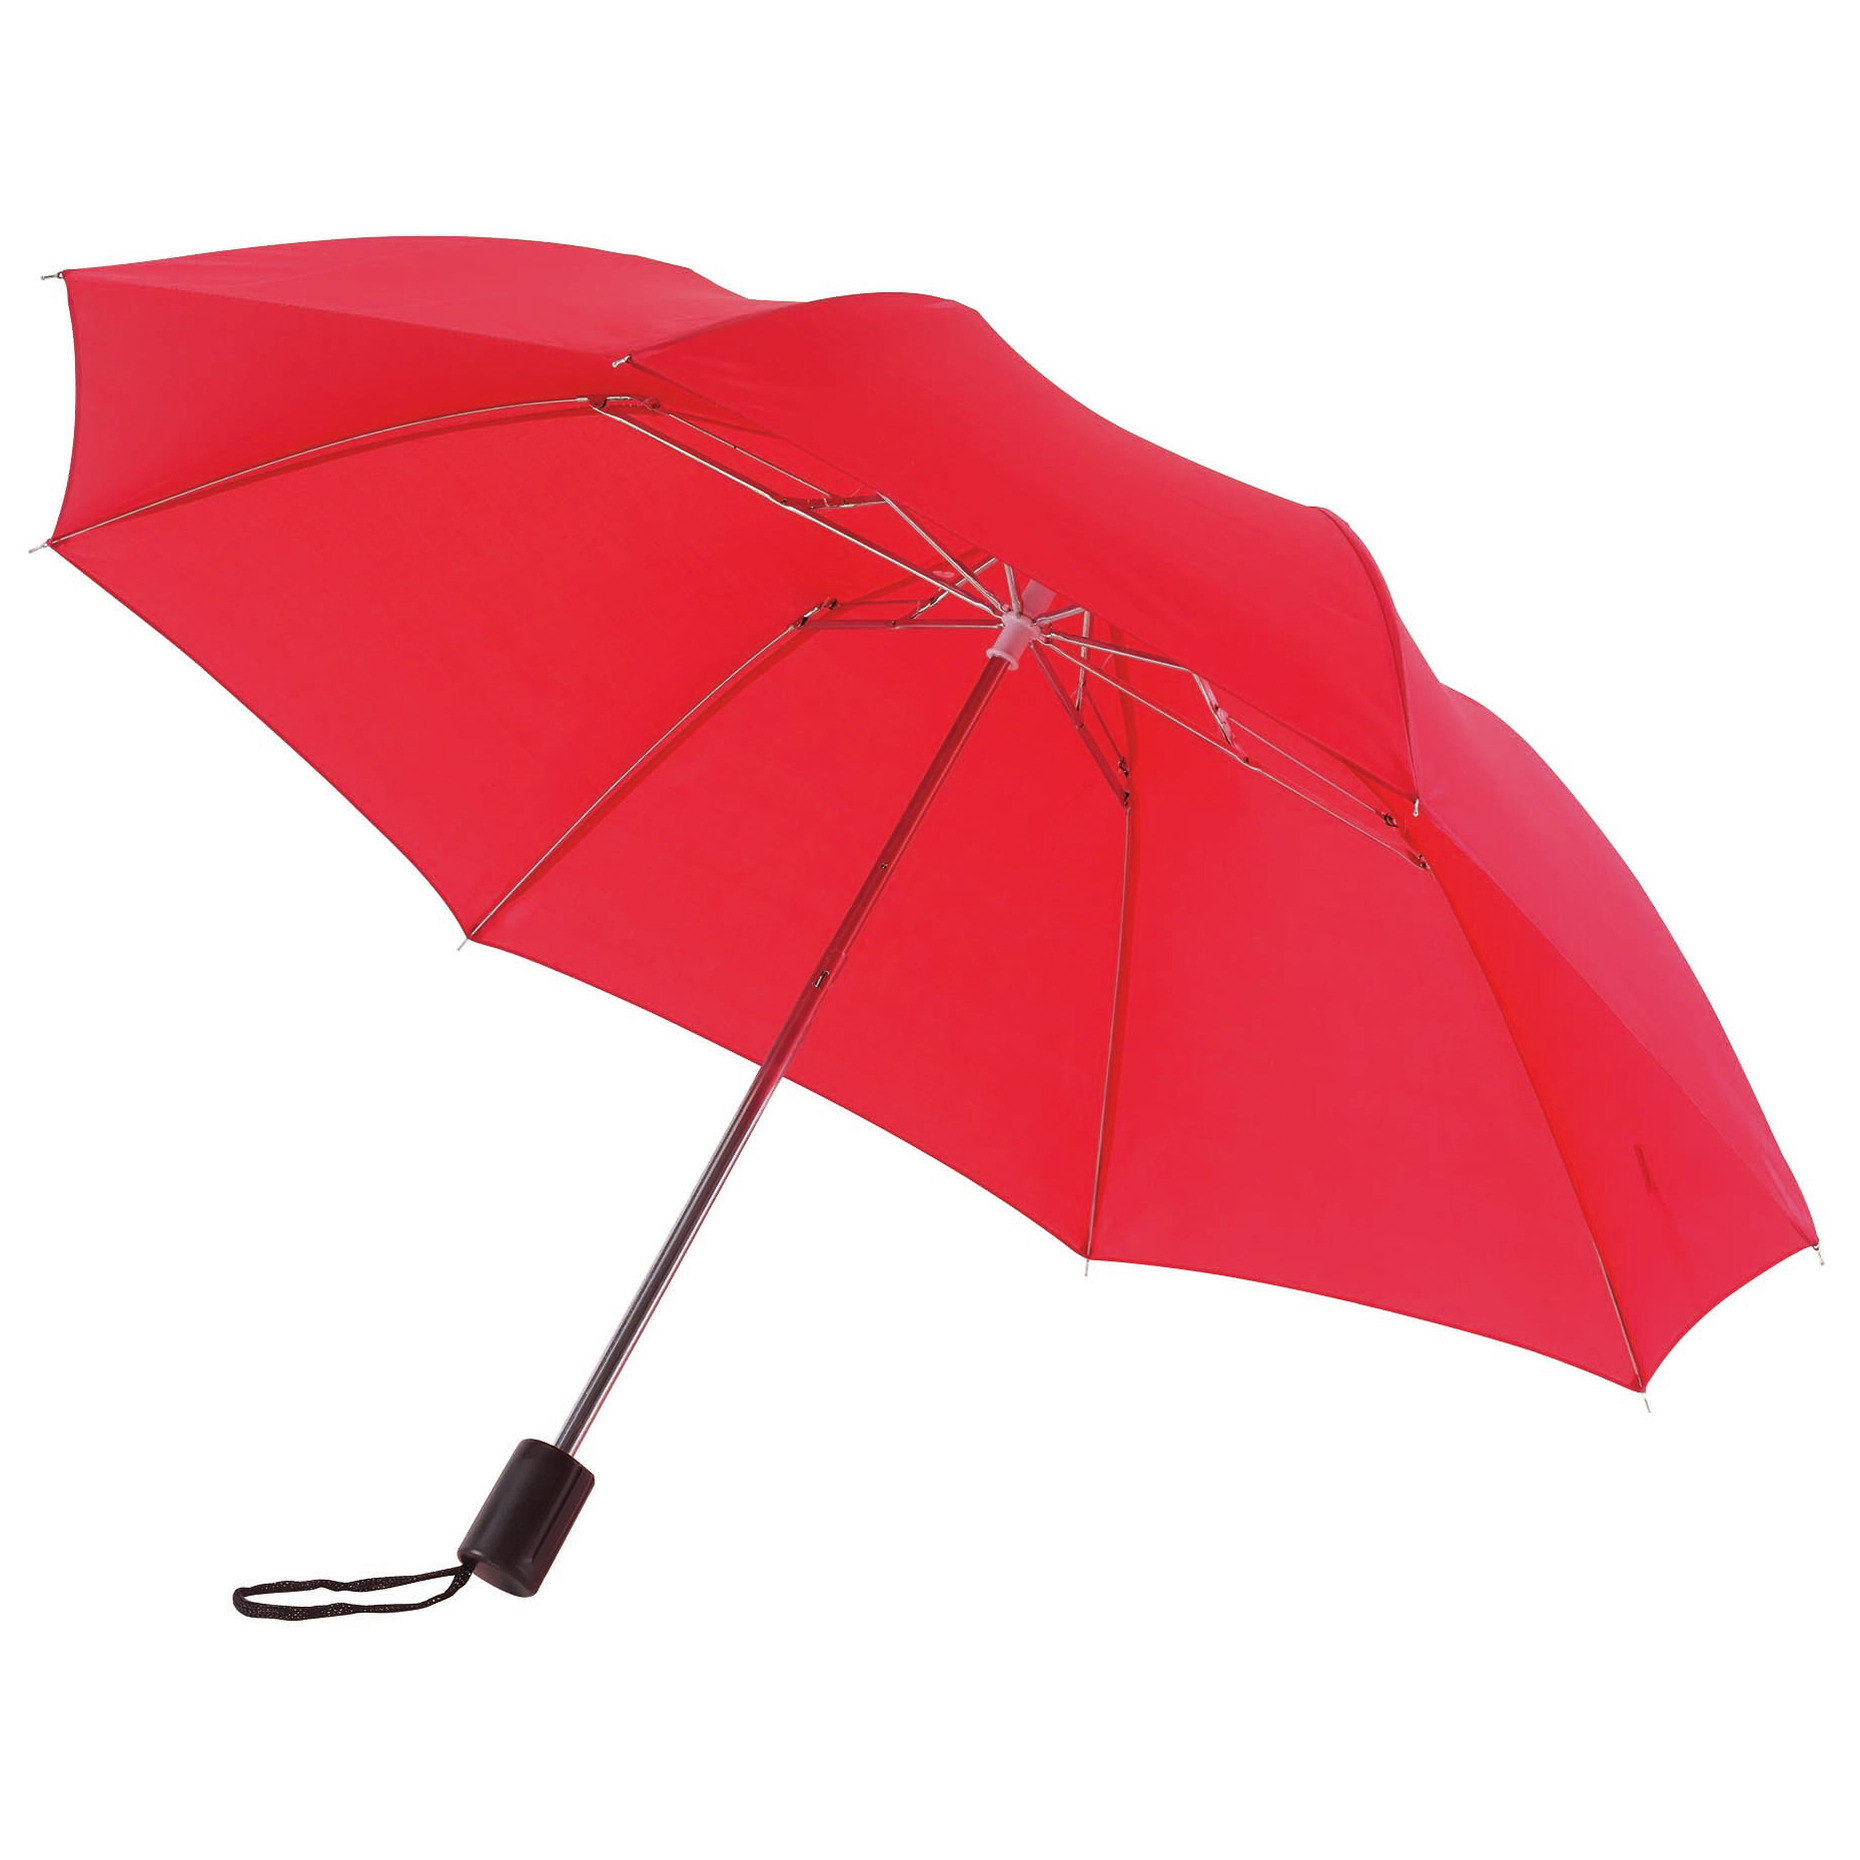 Rode paraplu uitklapbaar met hoes 85 cm